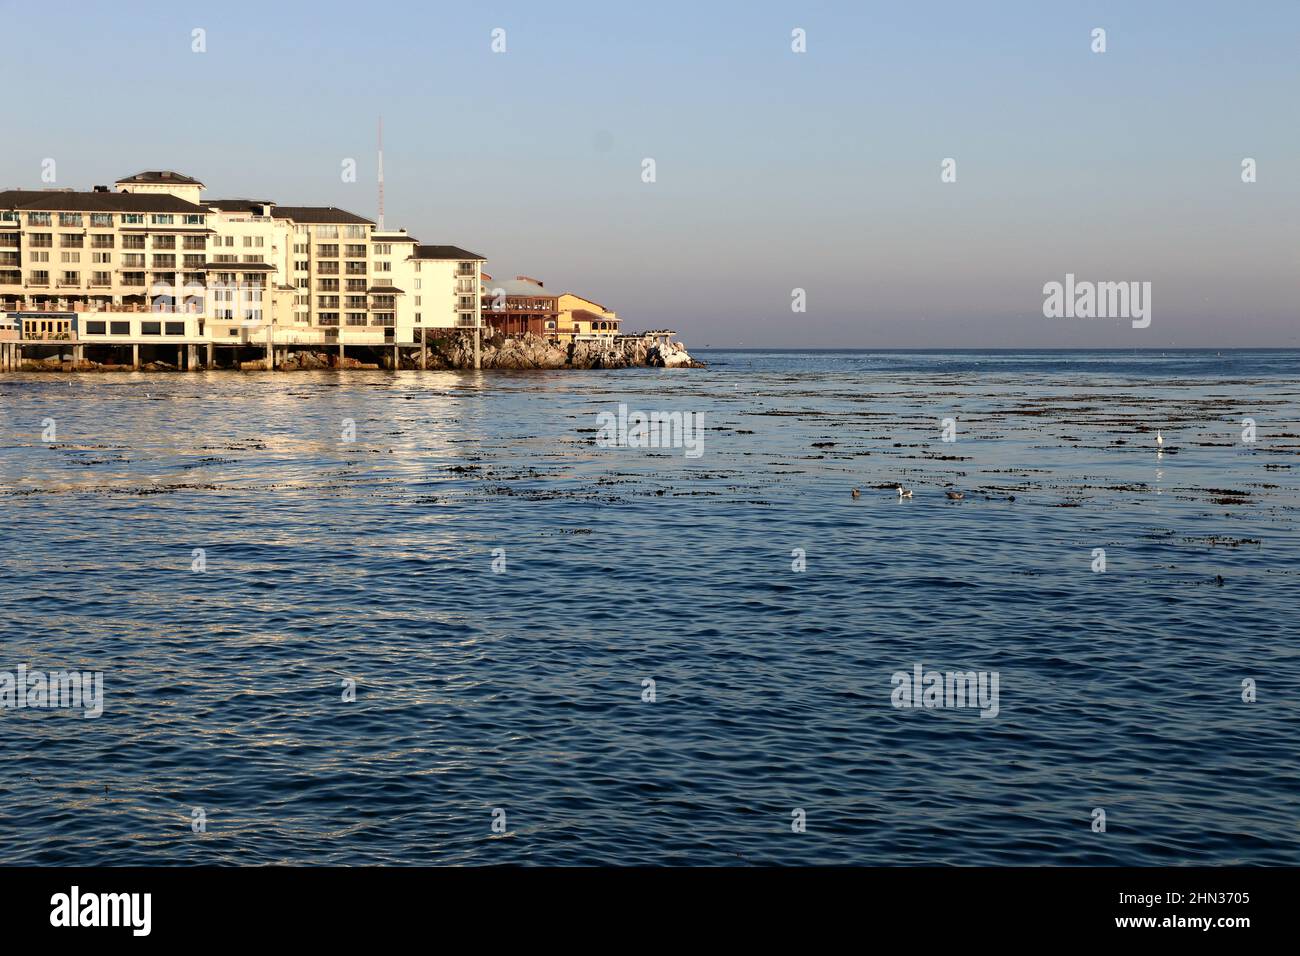 View across open water, Monterey Harbor, Monterey, CA. Stock Photo